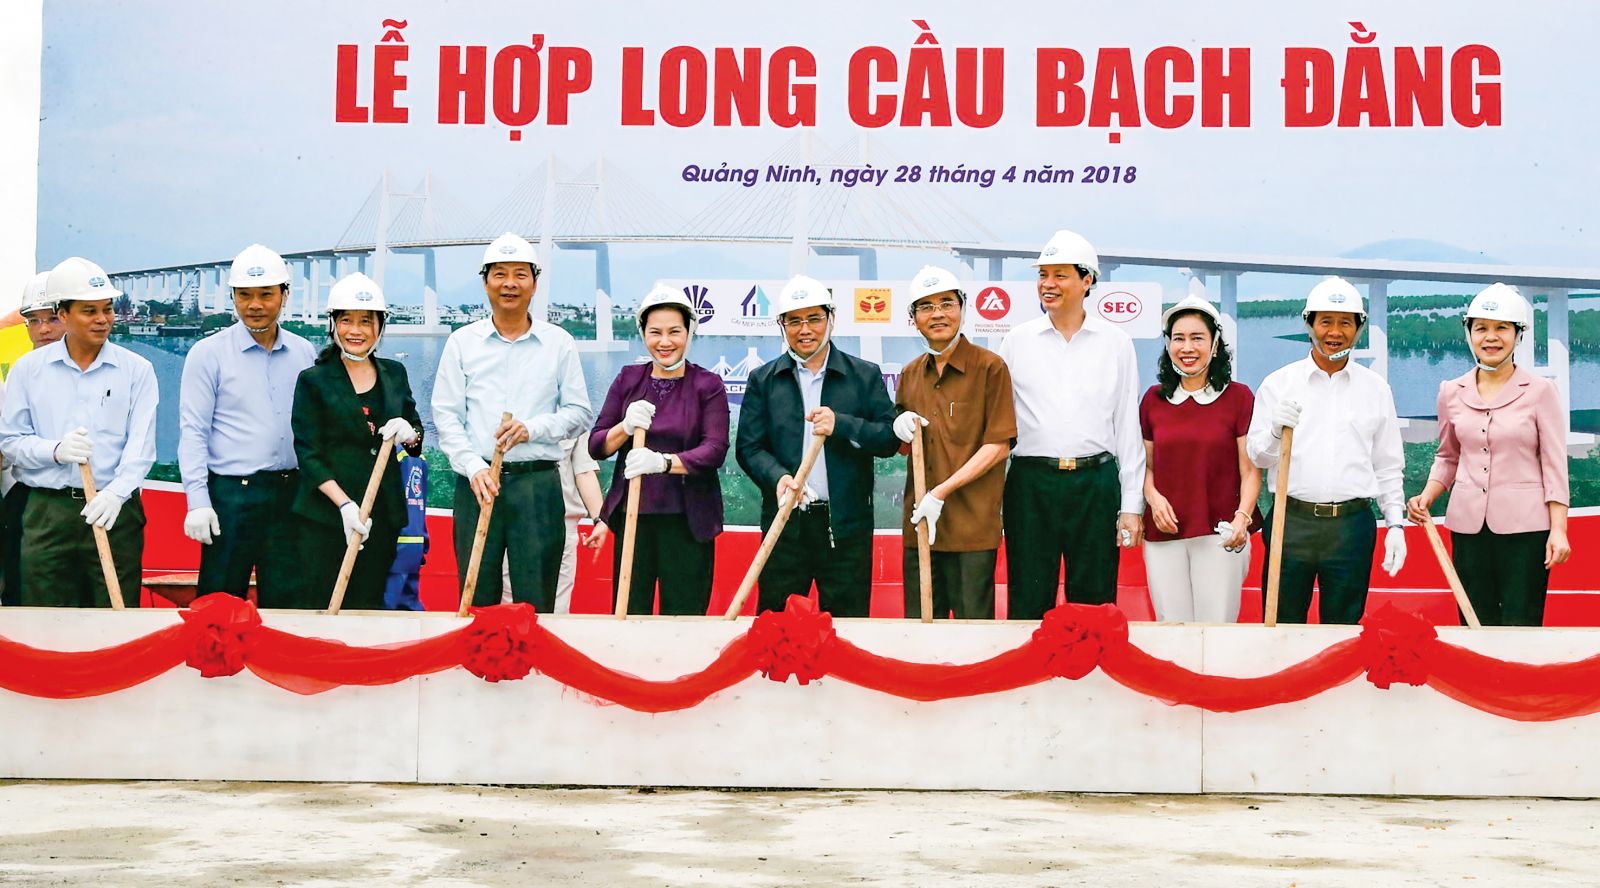 Chủ tịch Quốc hội Nguyễn Thị Kim Ngân và các đại biểu thực hiện nghi lễ hợp long cầu Bạch Đằng. Ảnh: TRỌNG ĐỨC-TTXVN